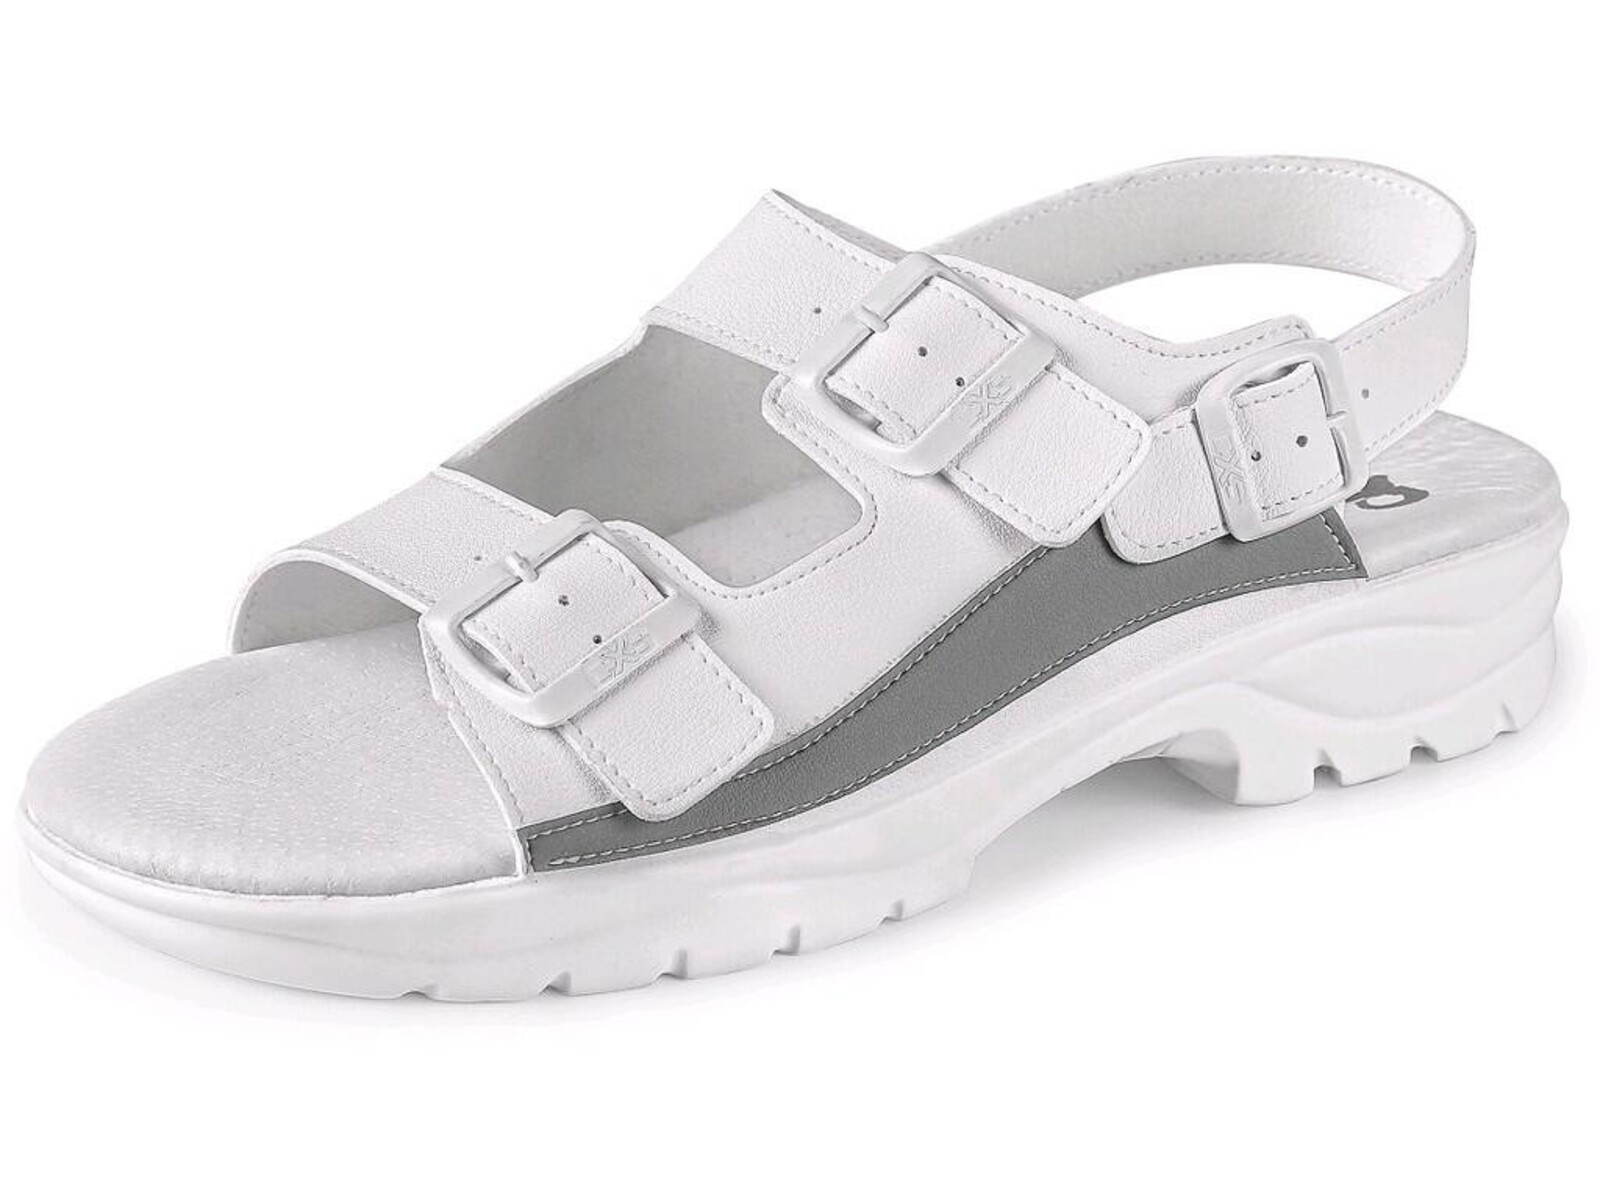 Pracovné sandále CXS Paola OB E A SRC - veľkosť: 45, farba: biela